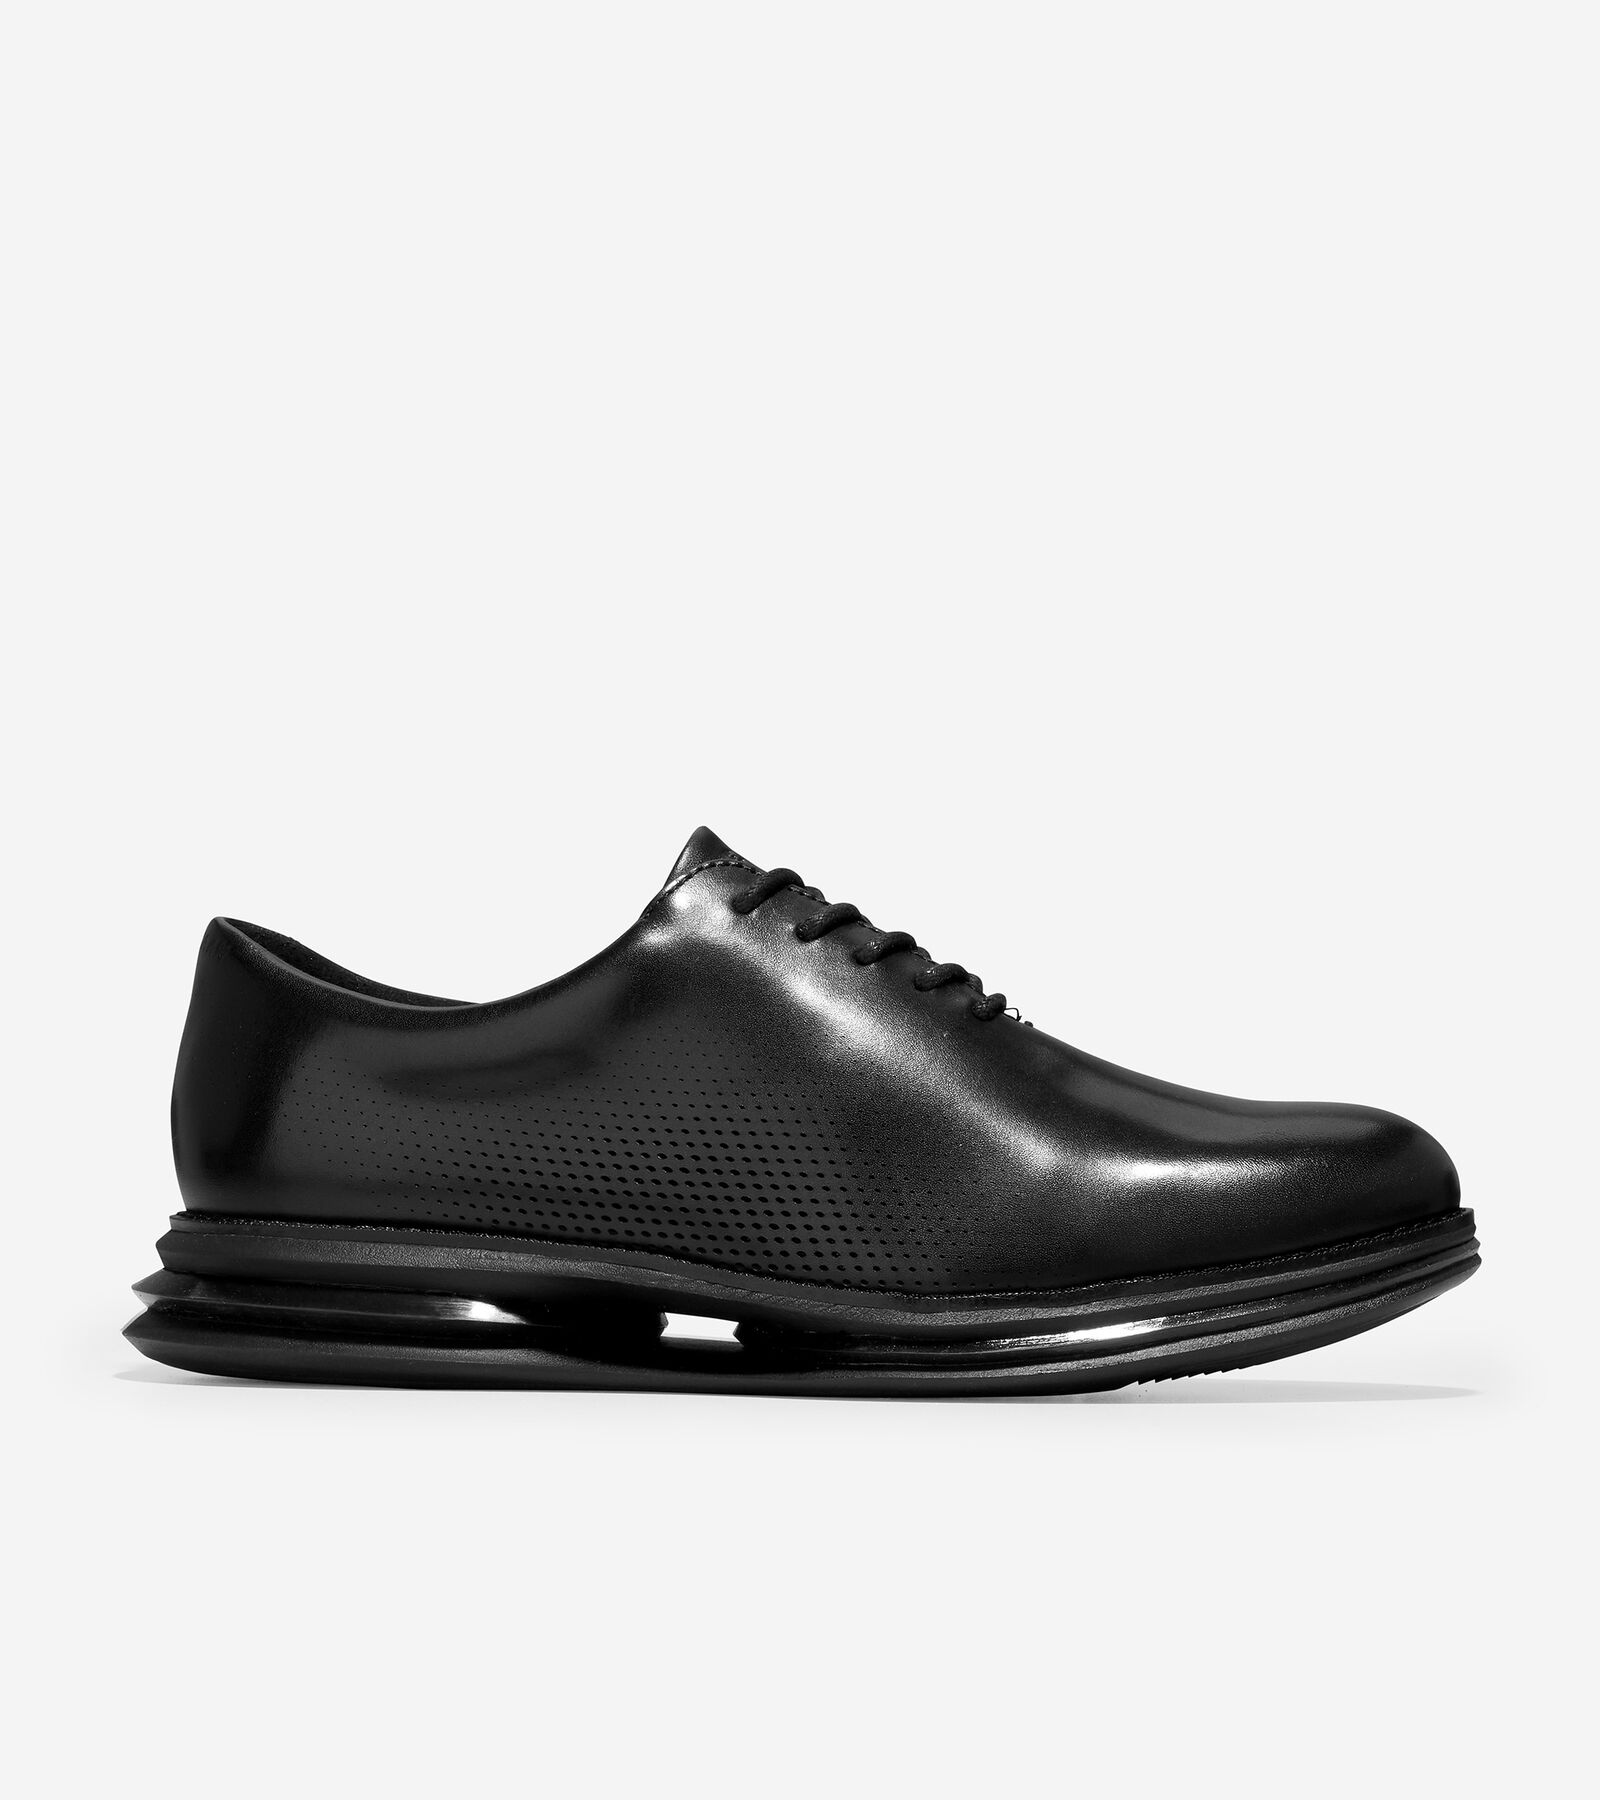 Cole Haan Men's Øriginalgrand Energy Twin Oxford Dress Shoe Men's Shoes In Black